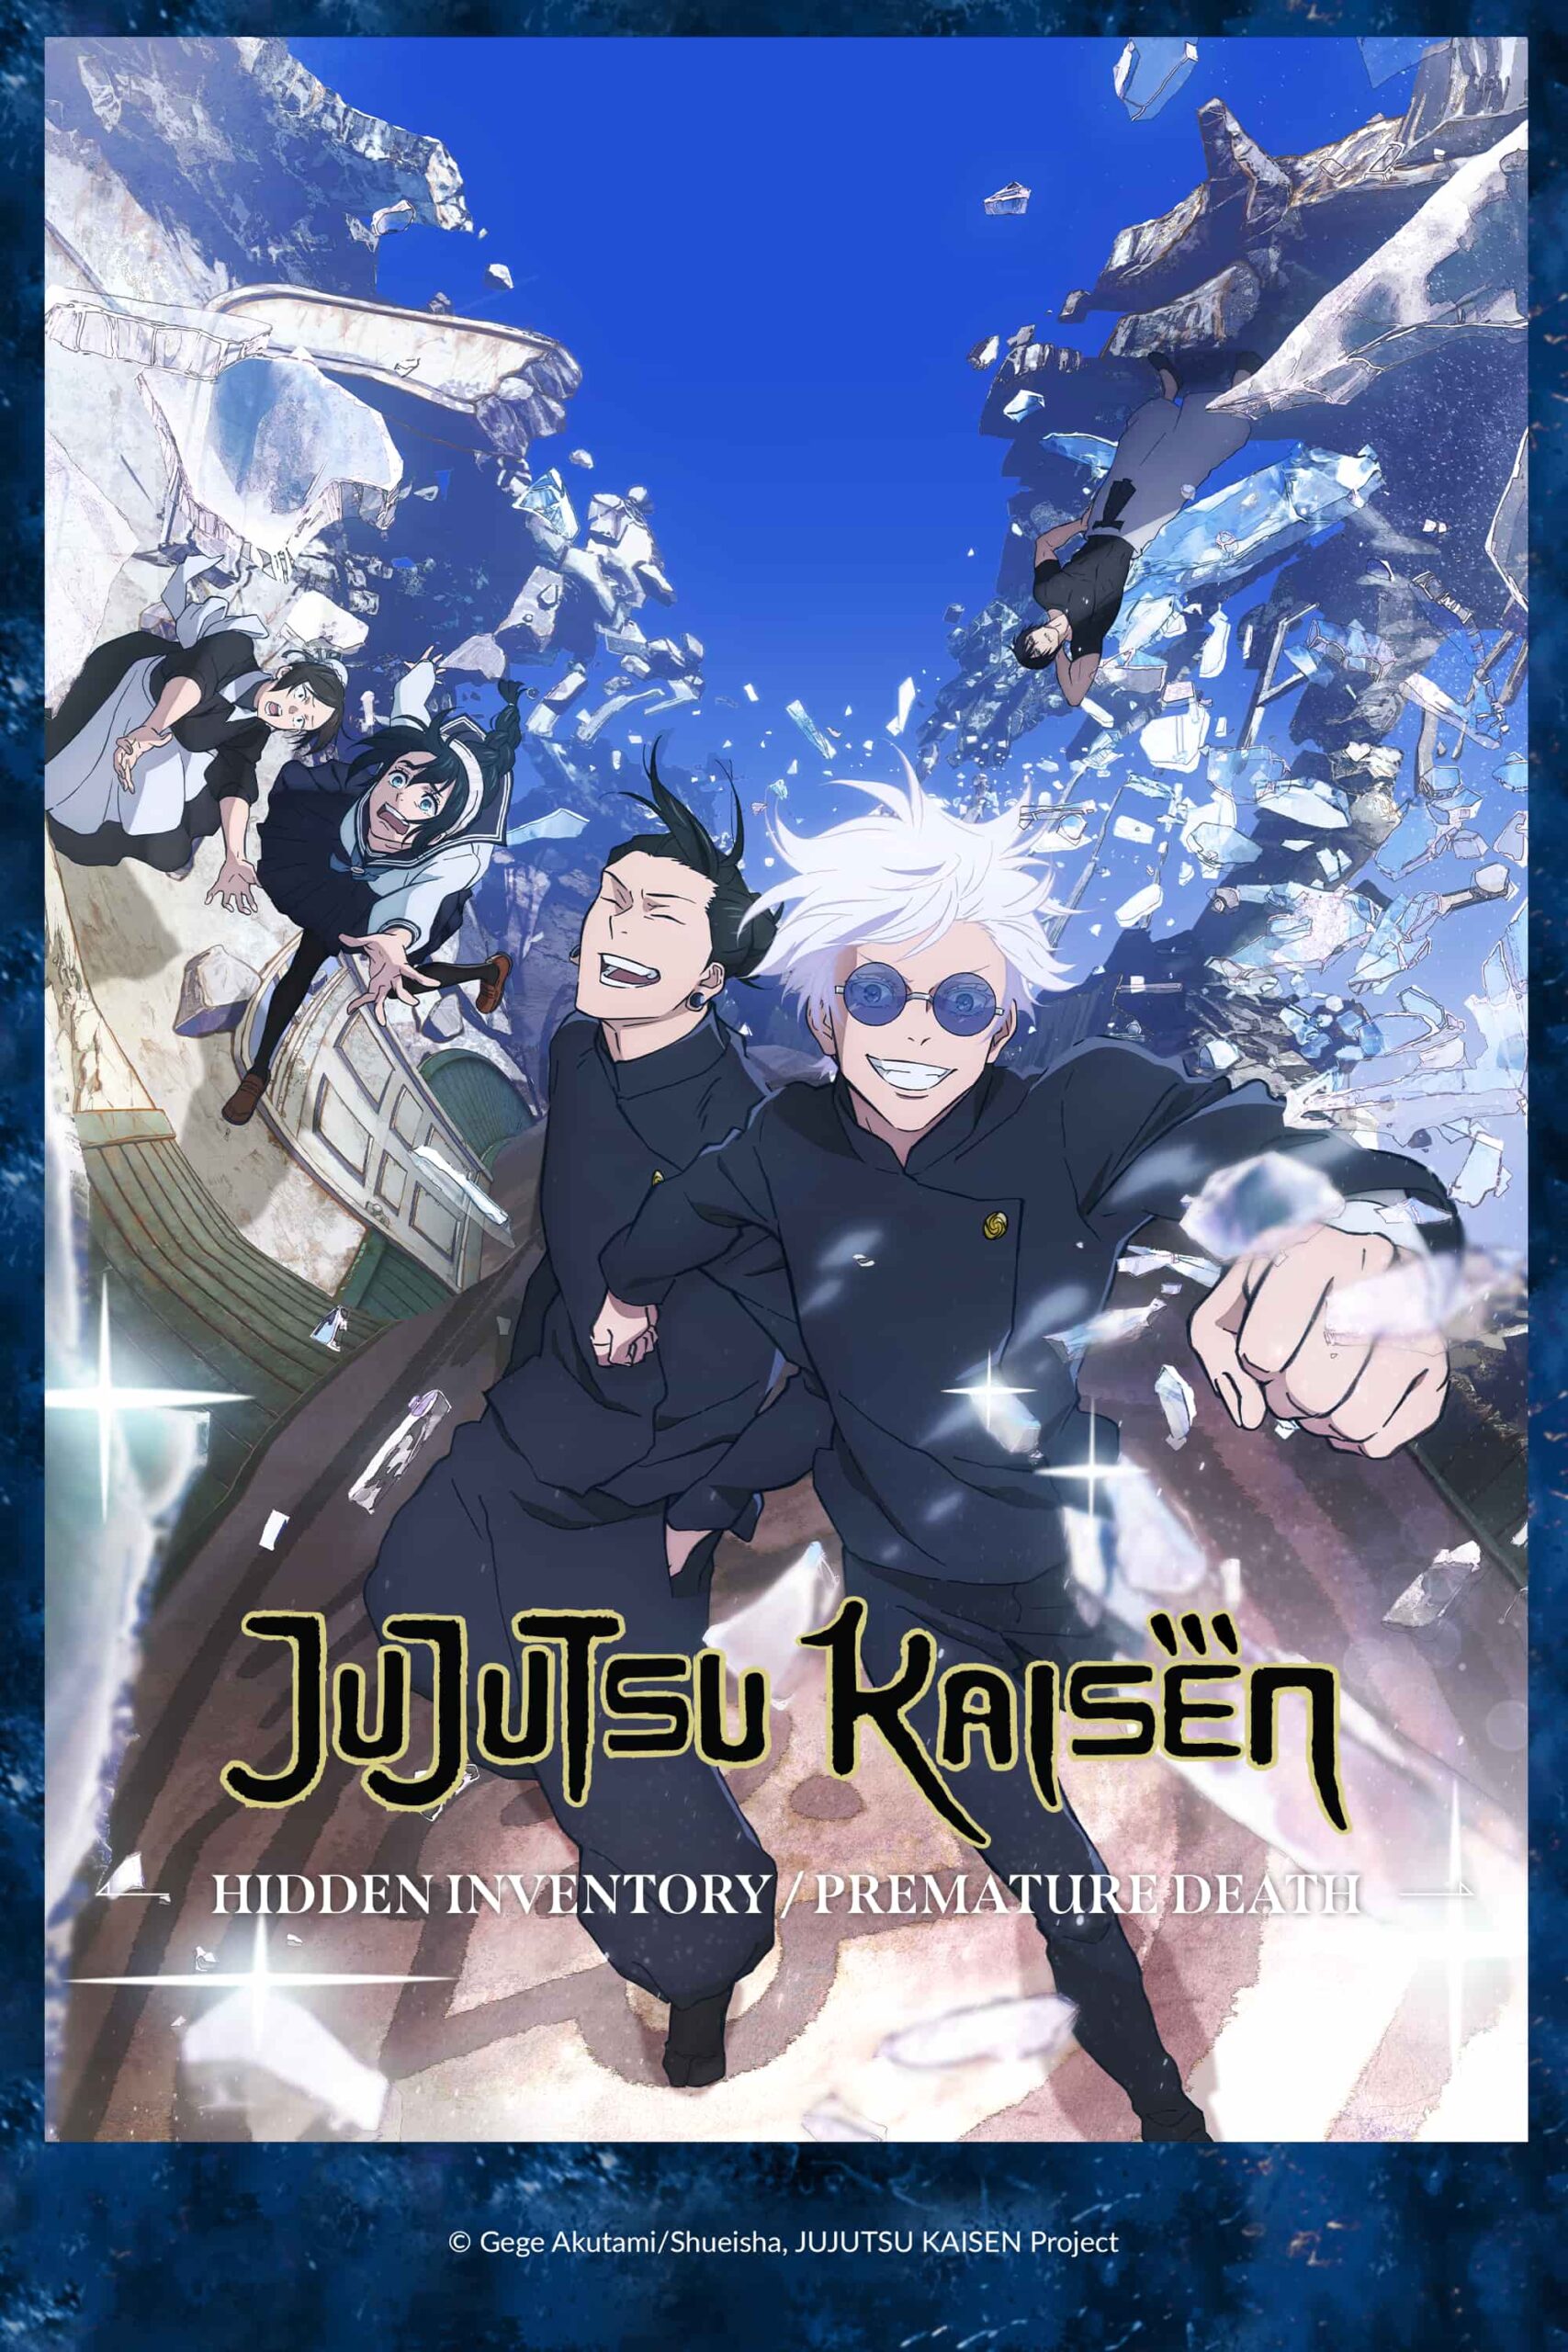 Jujutsu Kaisen 0': Filme tem data de lançamento confirmada nos